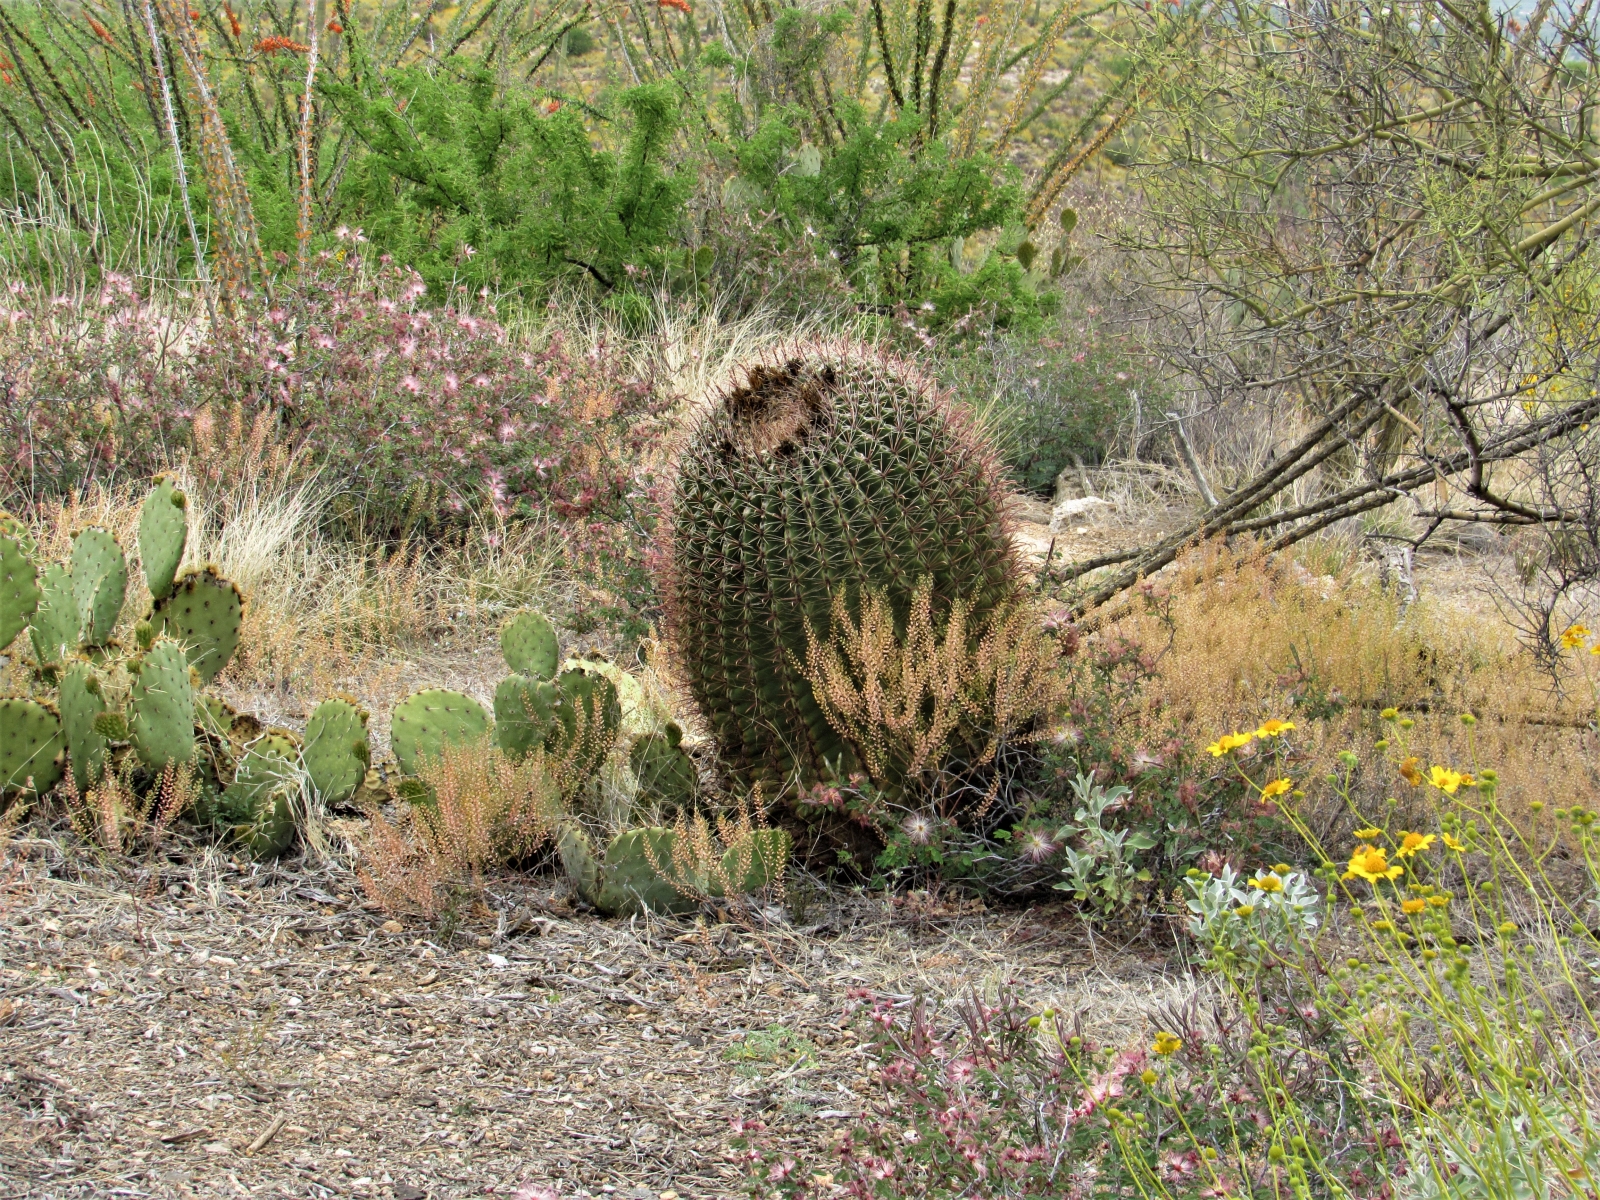 Barrel-cactus